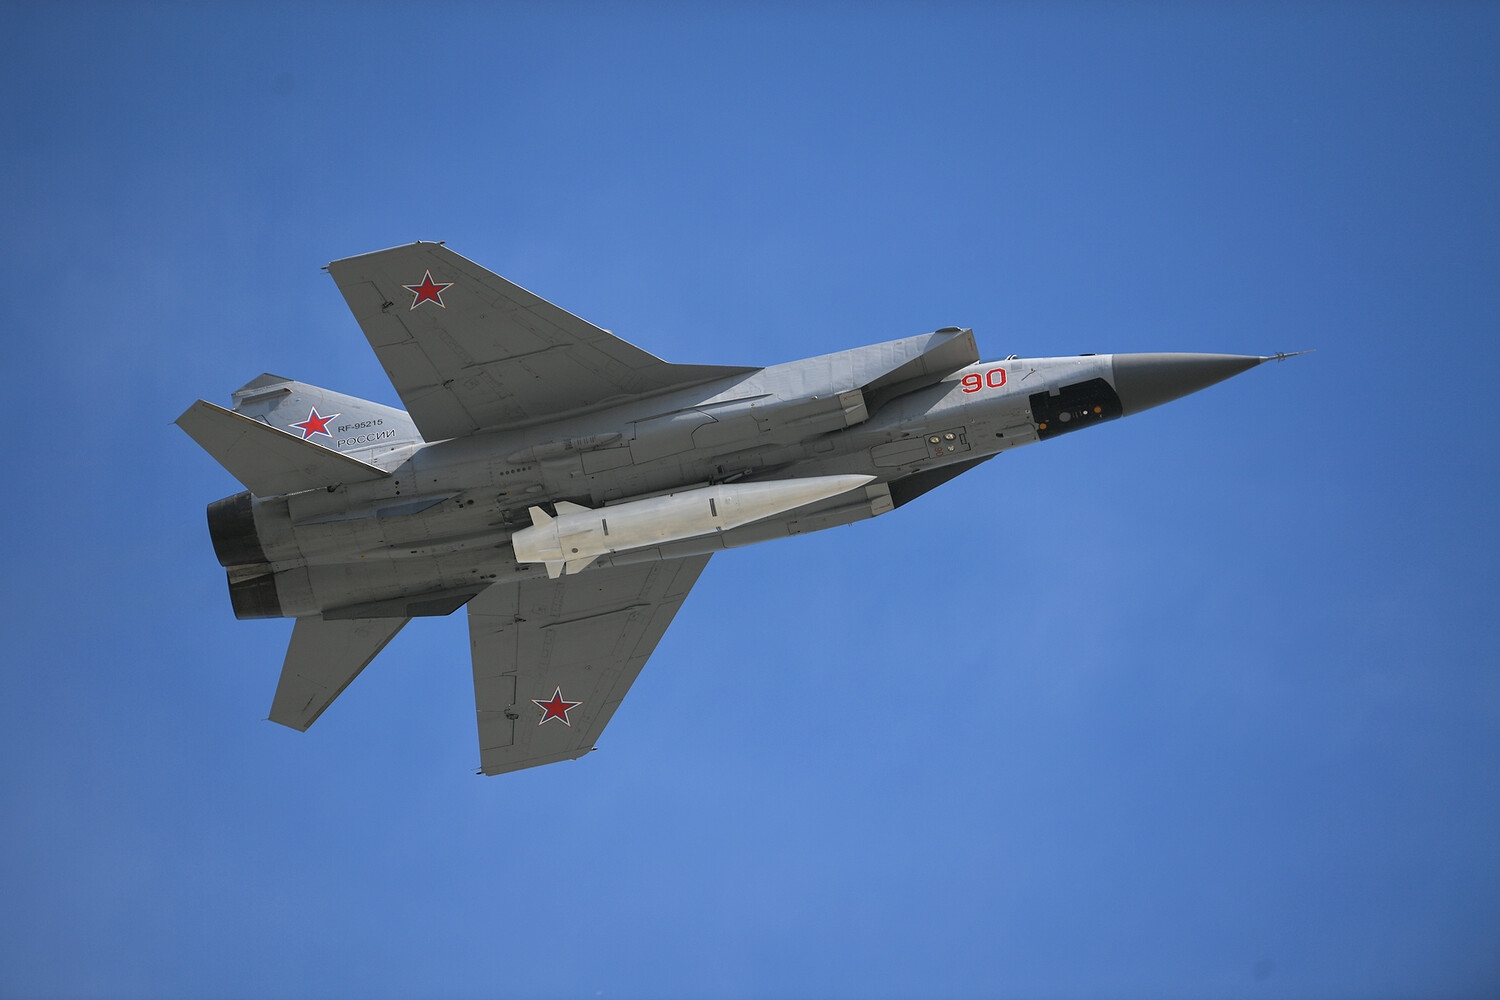 ВКС России получили модернизированные перехватчики МиГ-31